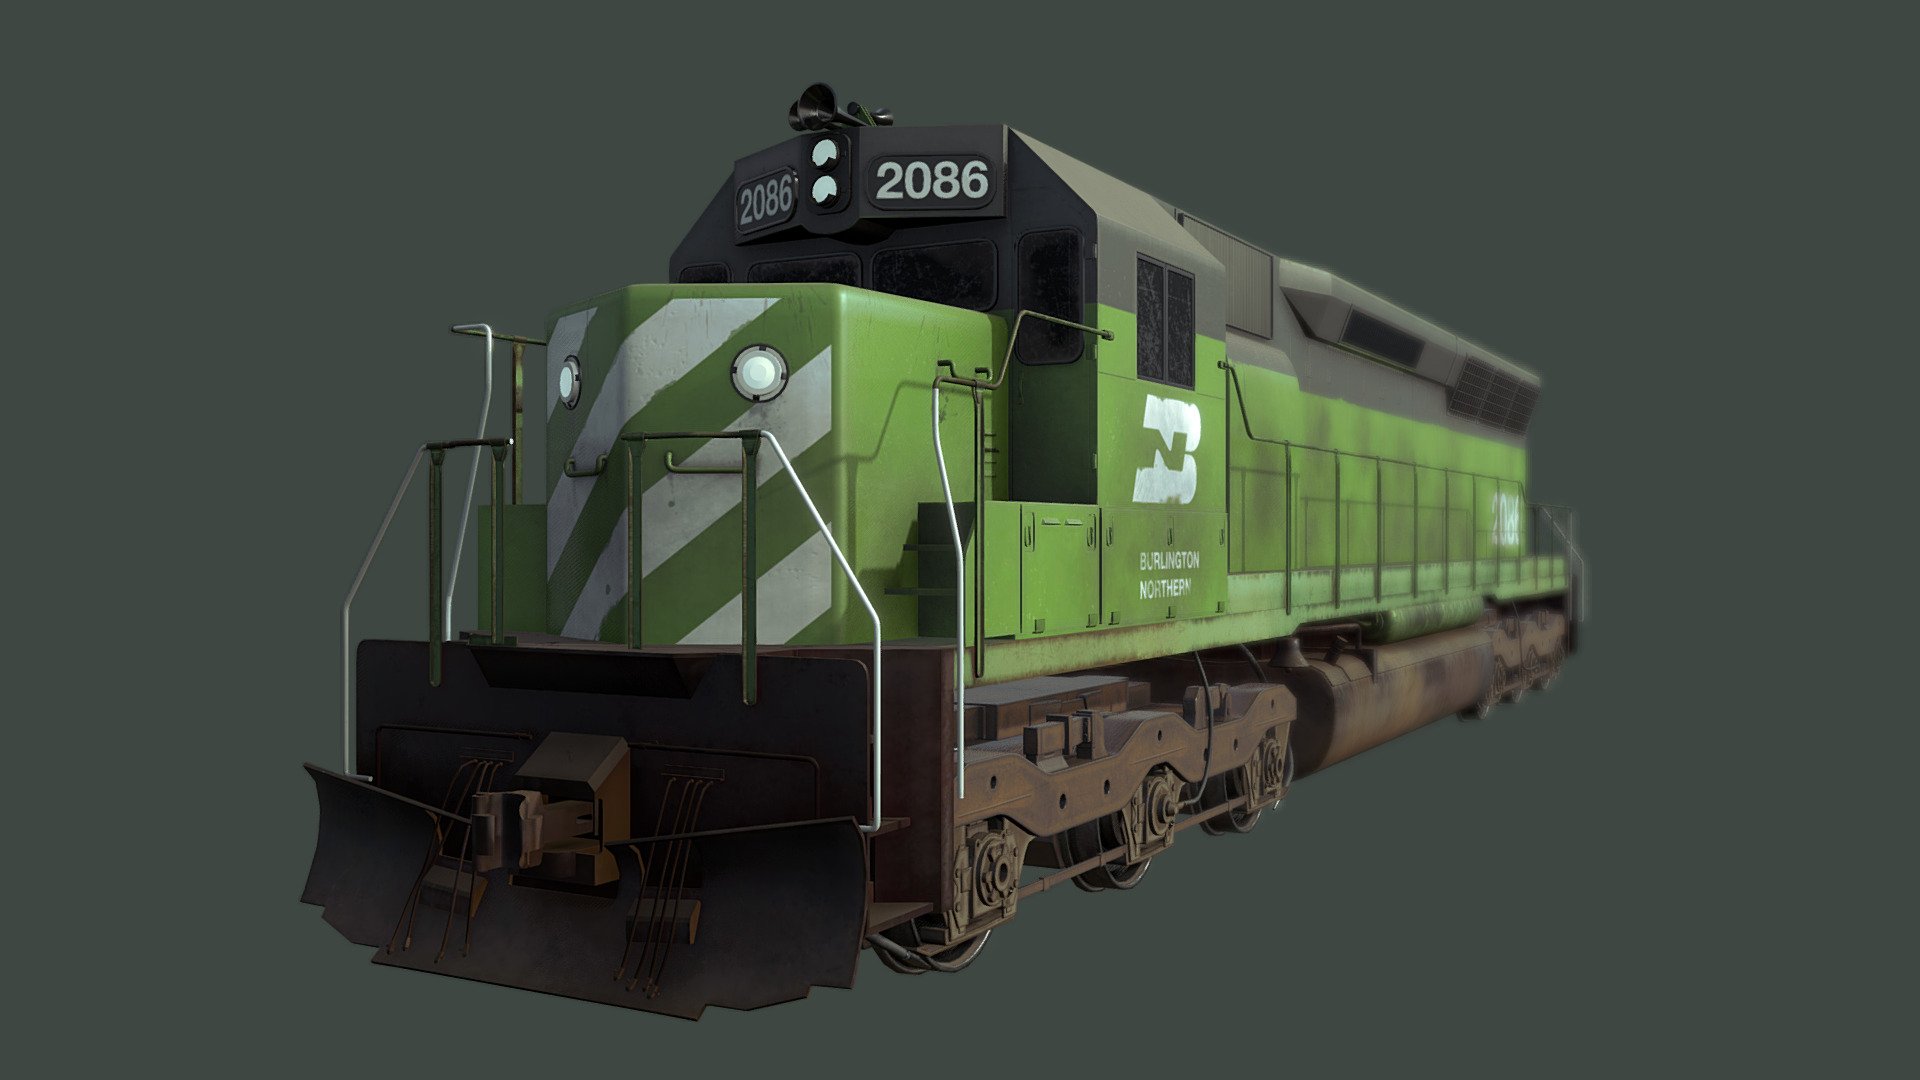 It's a train, that is an SD45 - SD45 1a1 Train - 3D model by LouieChapm 3d model